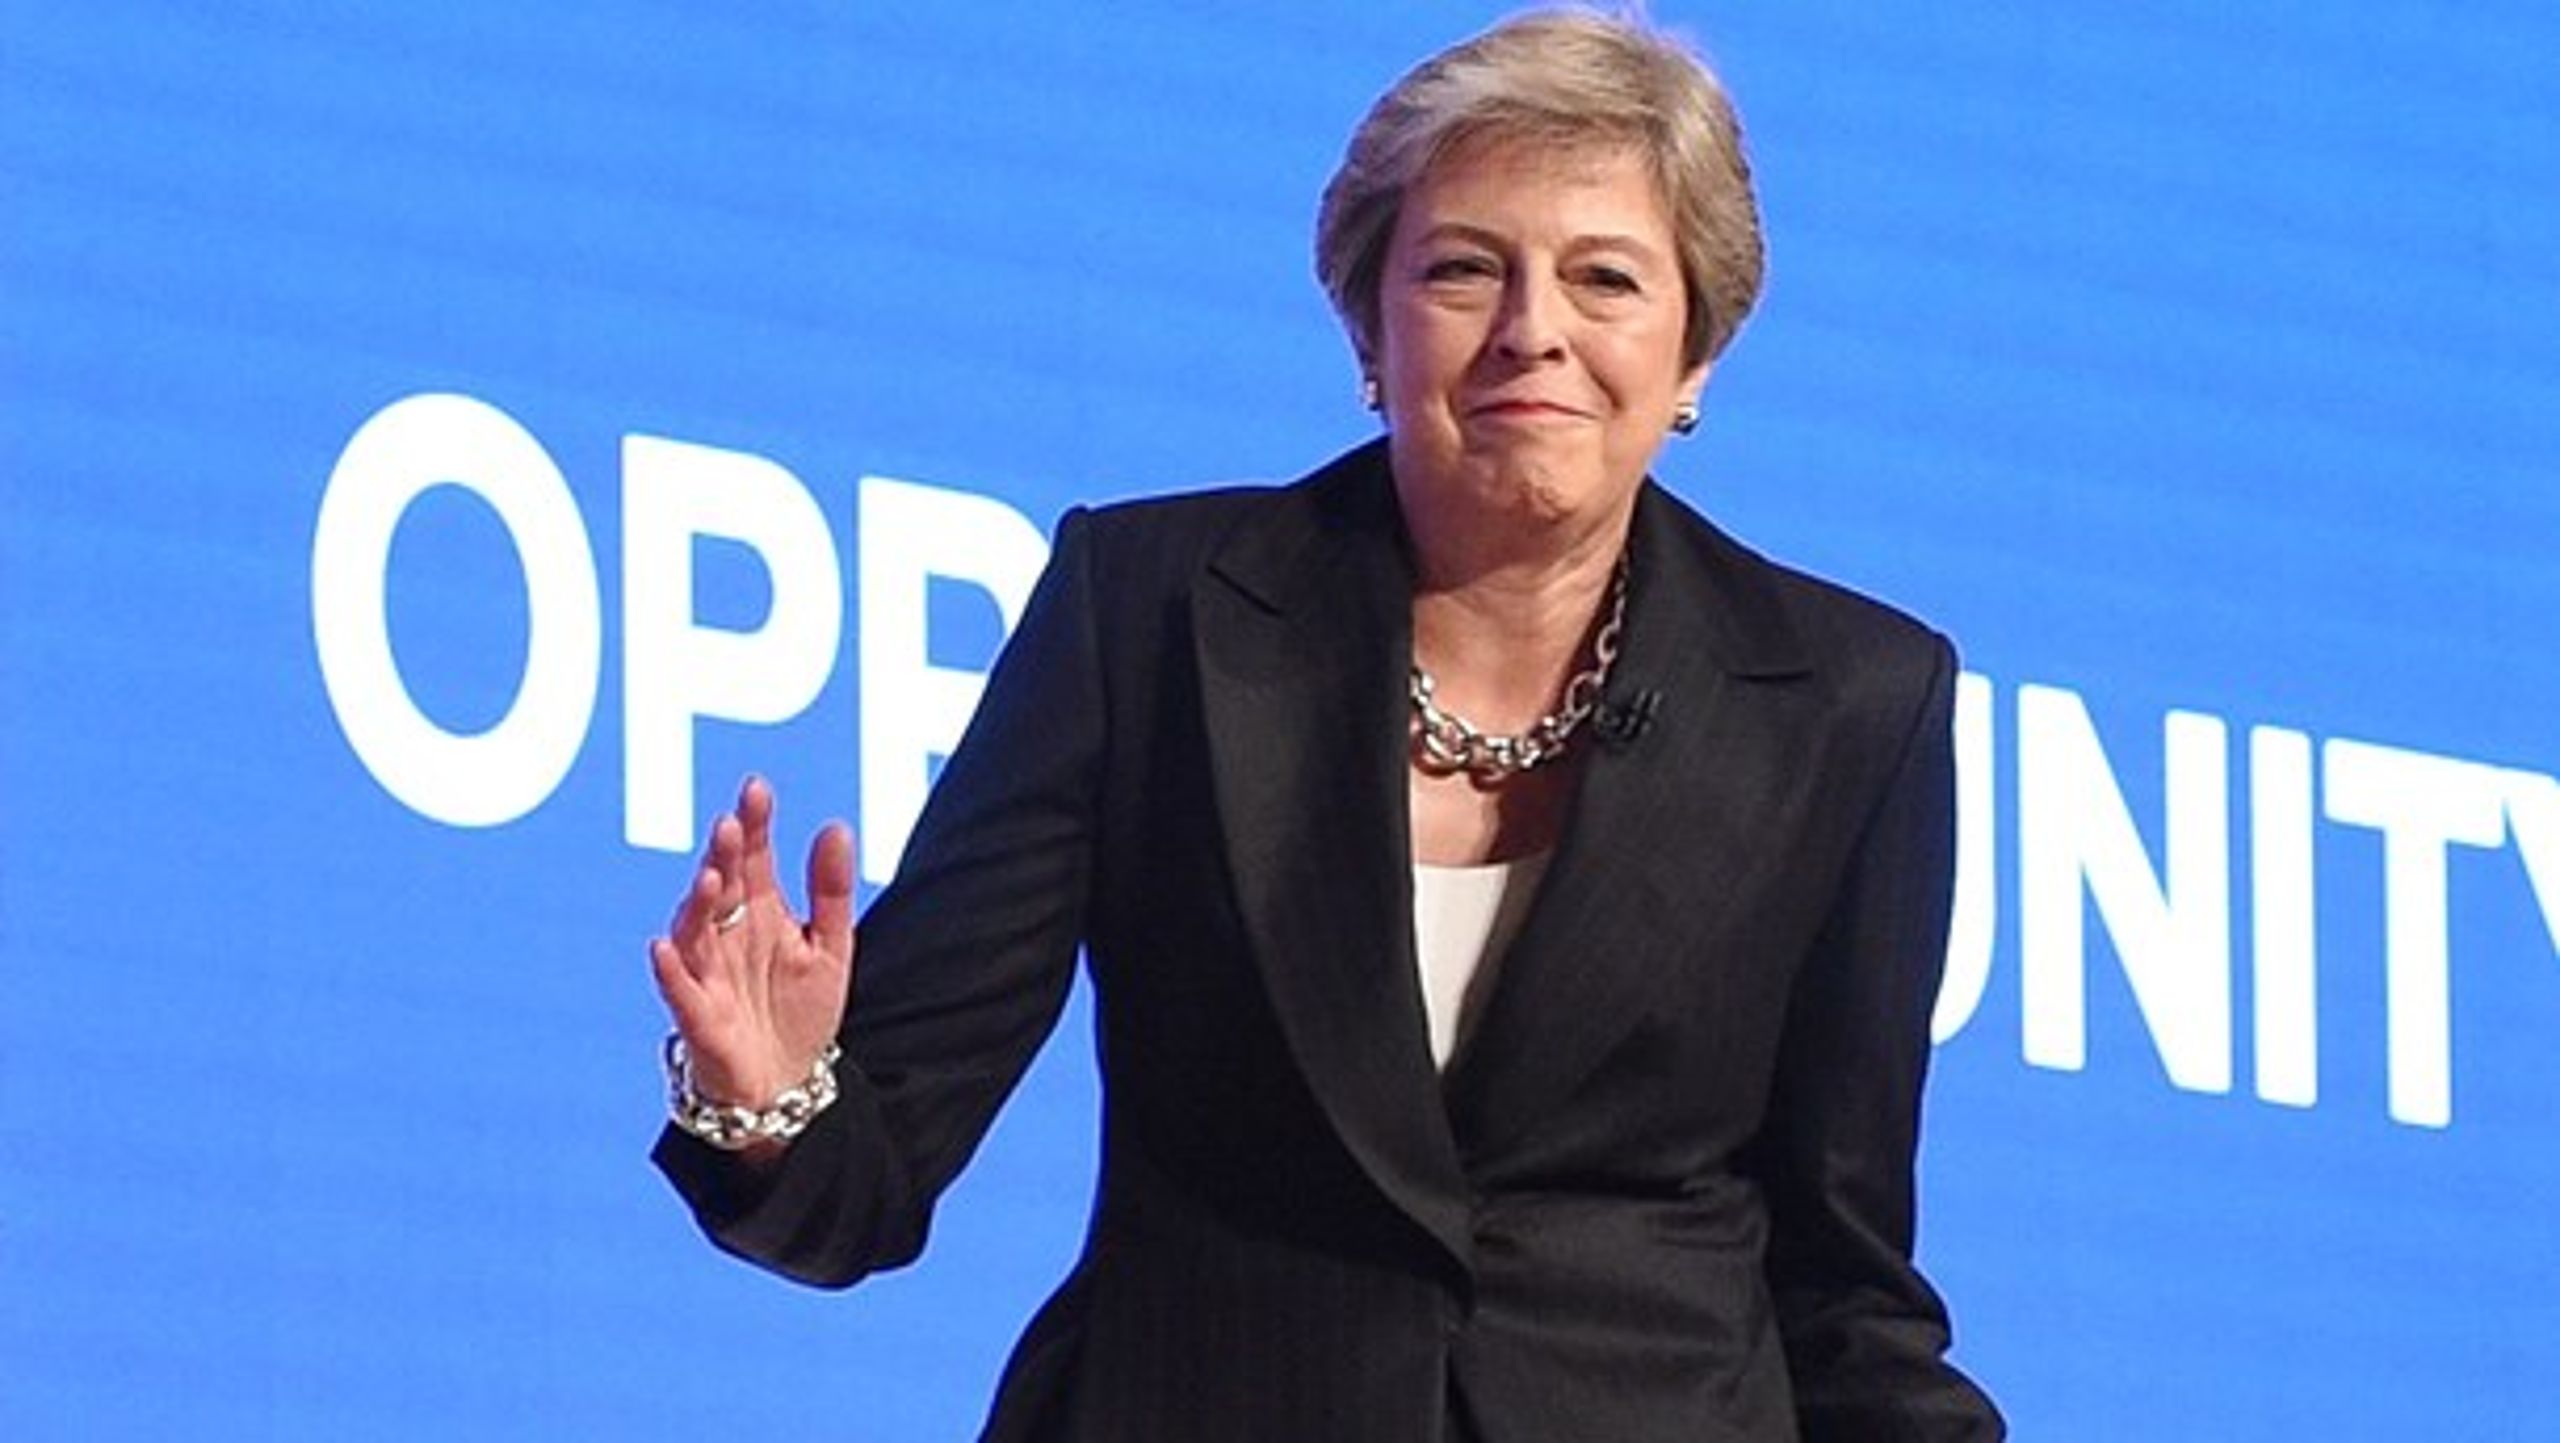 Den britiske premierminister viste sine bedste moves til ABBA's Dancing Queen, da hun gik på scenen ved Konservatives partikongres.&nbsp;